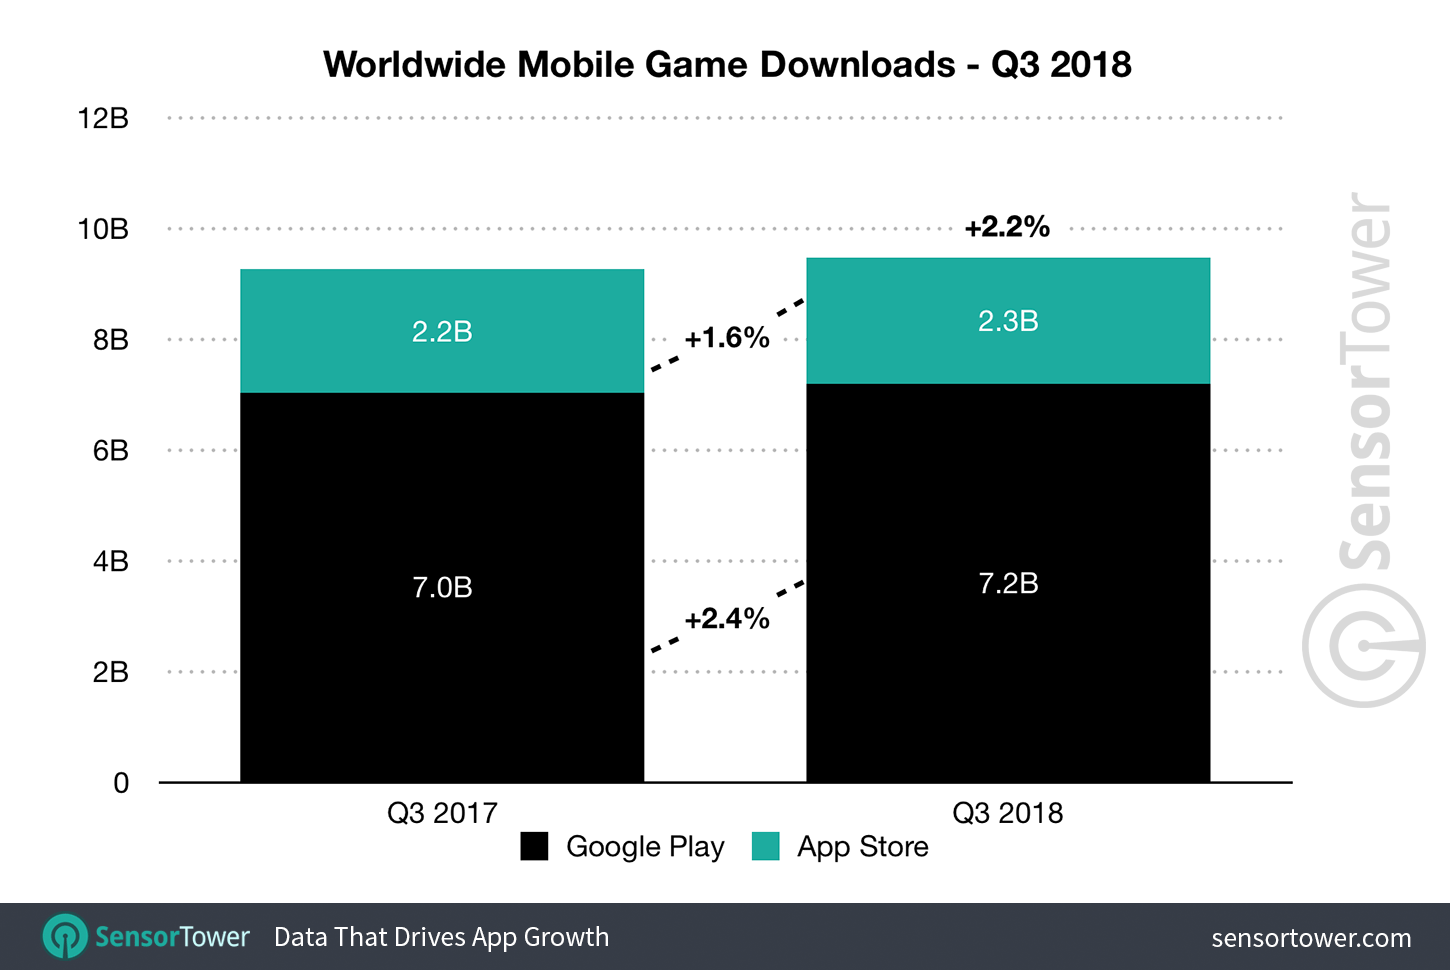 q3-2018-game-downloads-worldwide